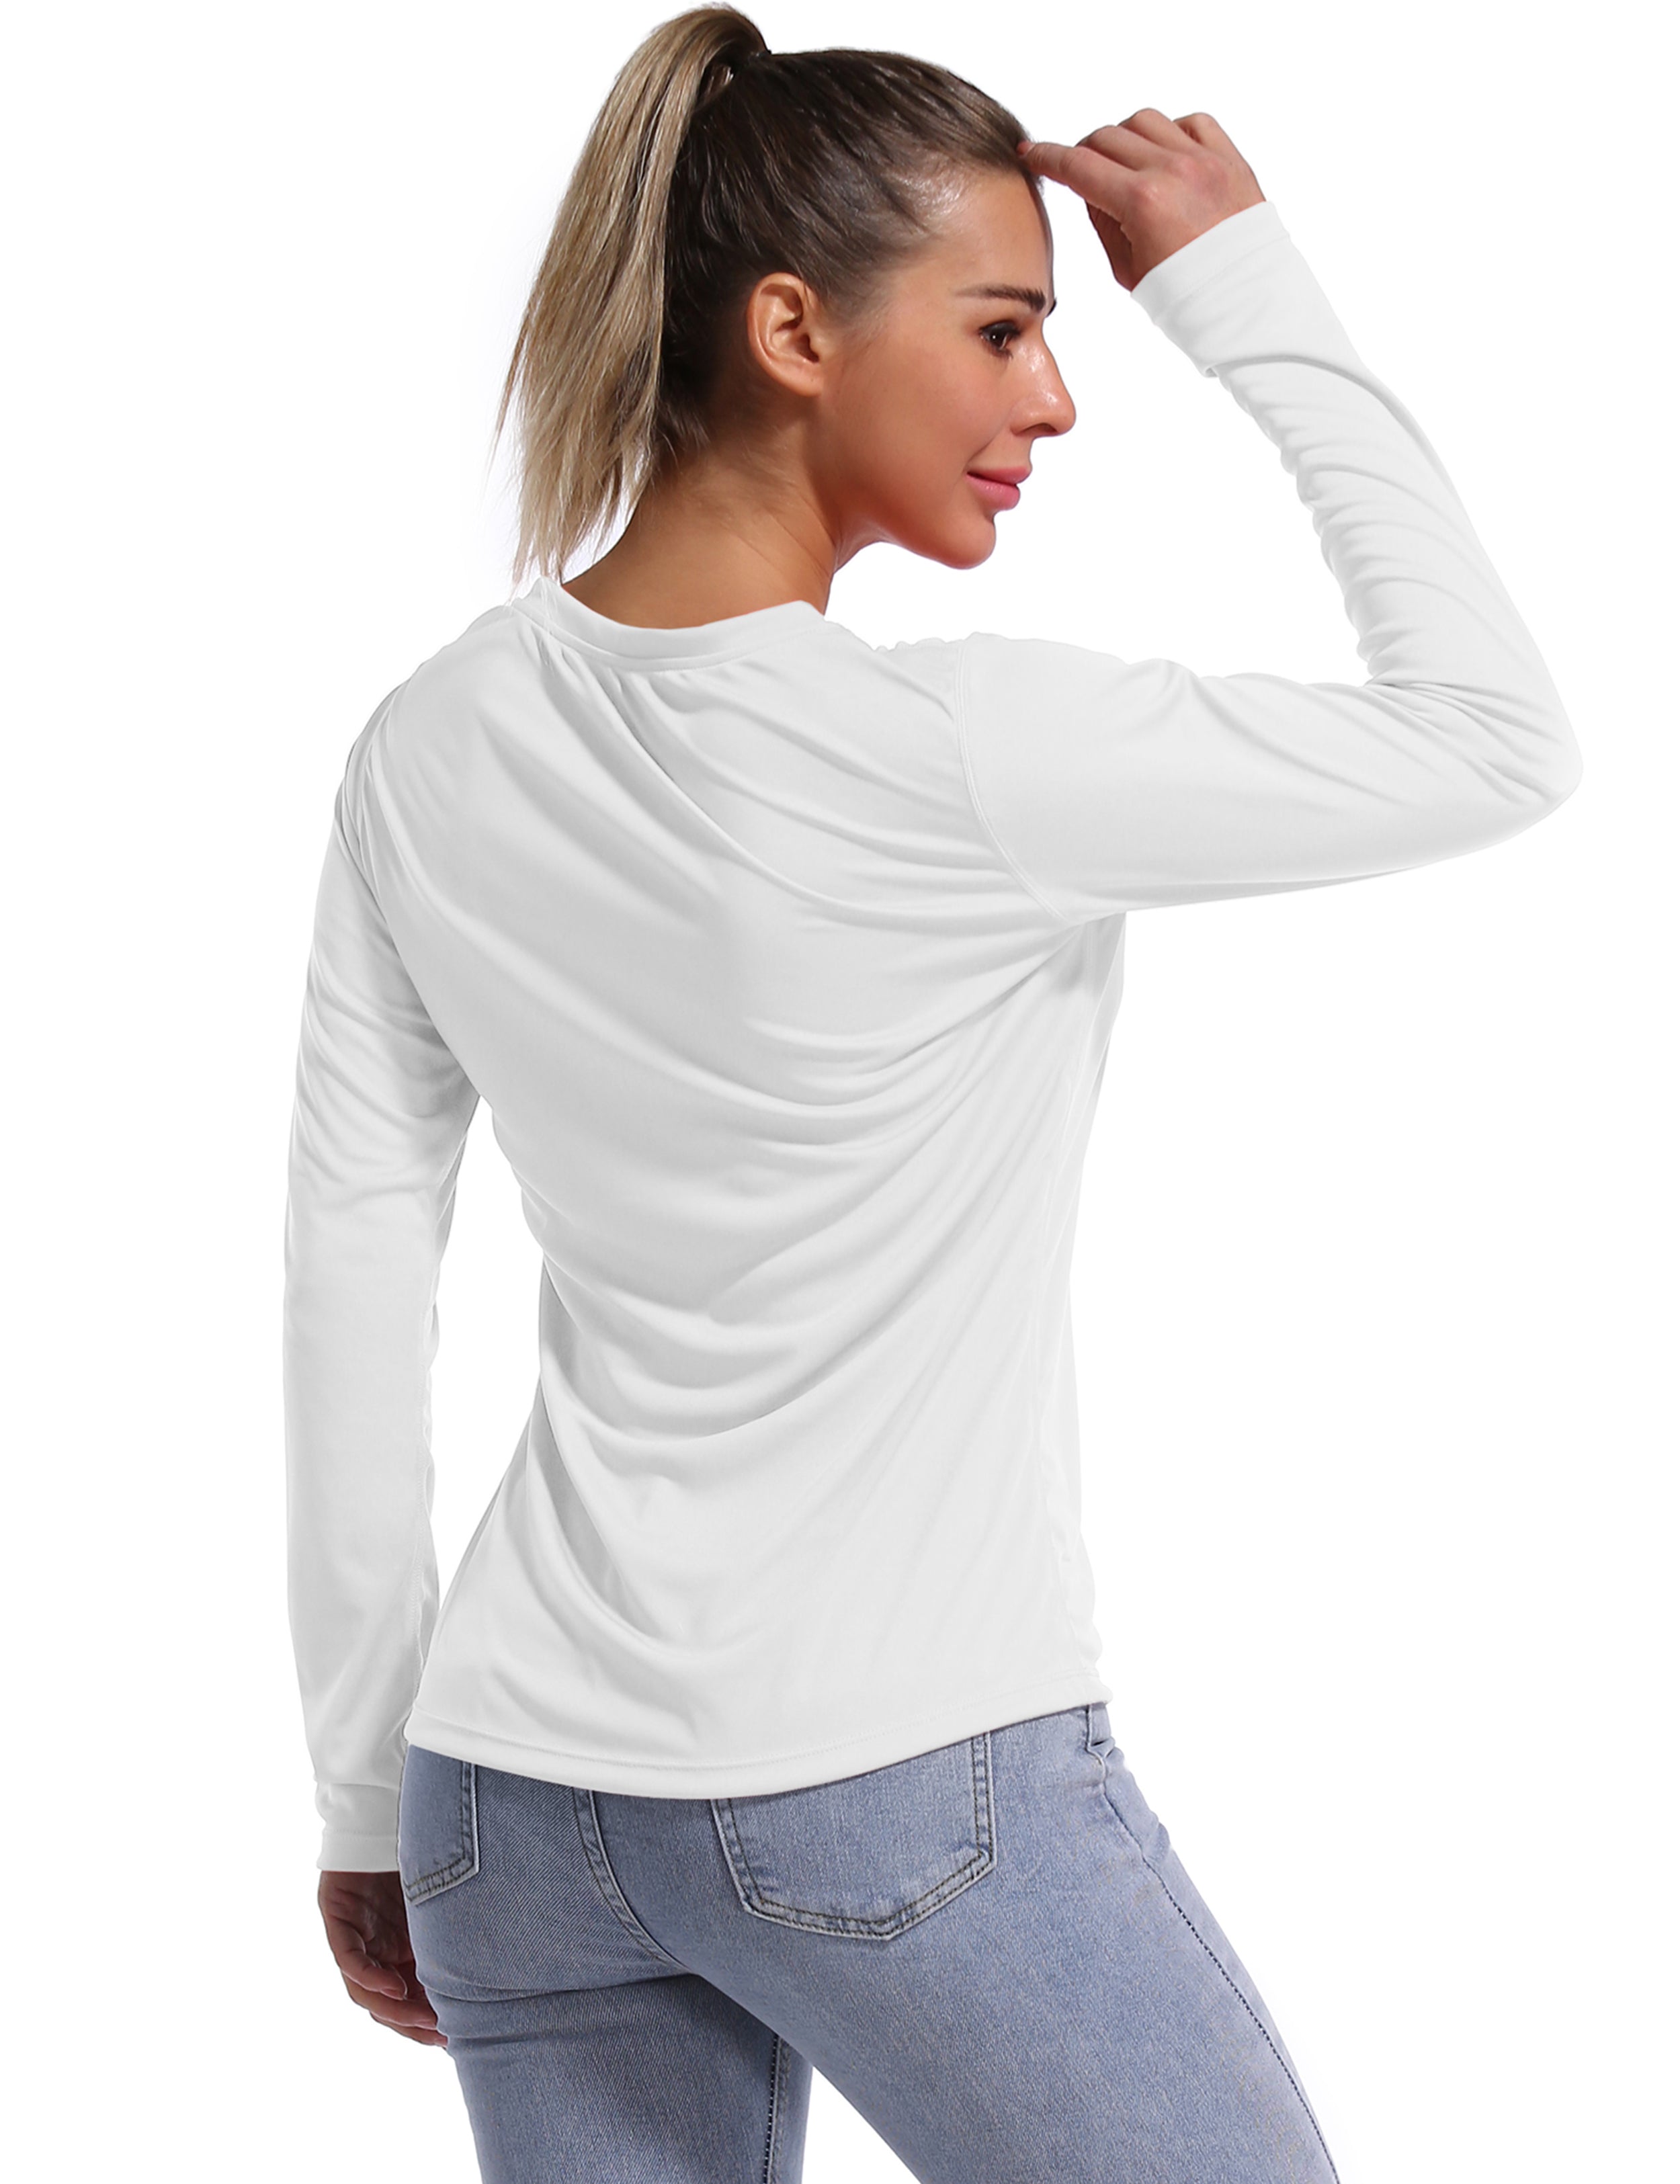 V Neck Long Sleeve Athletic Shirts white_Running